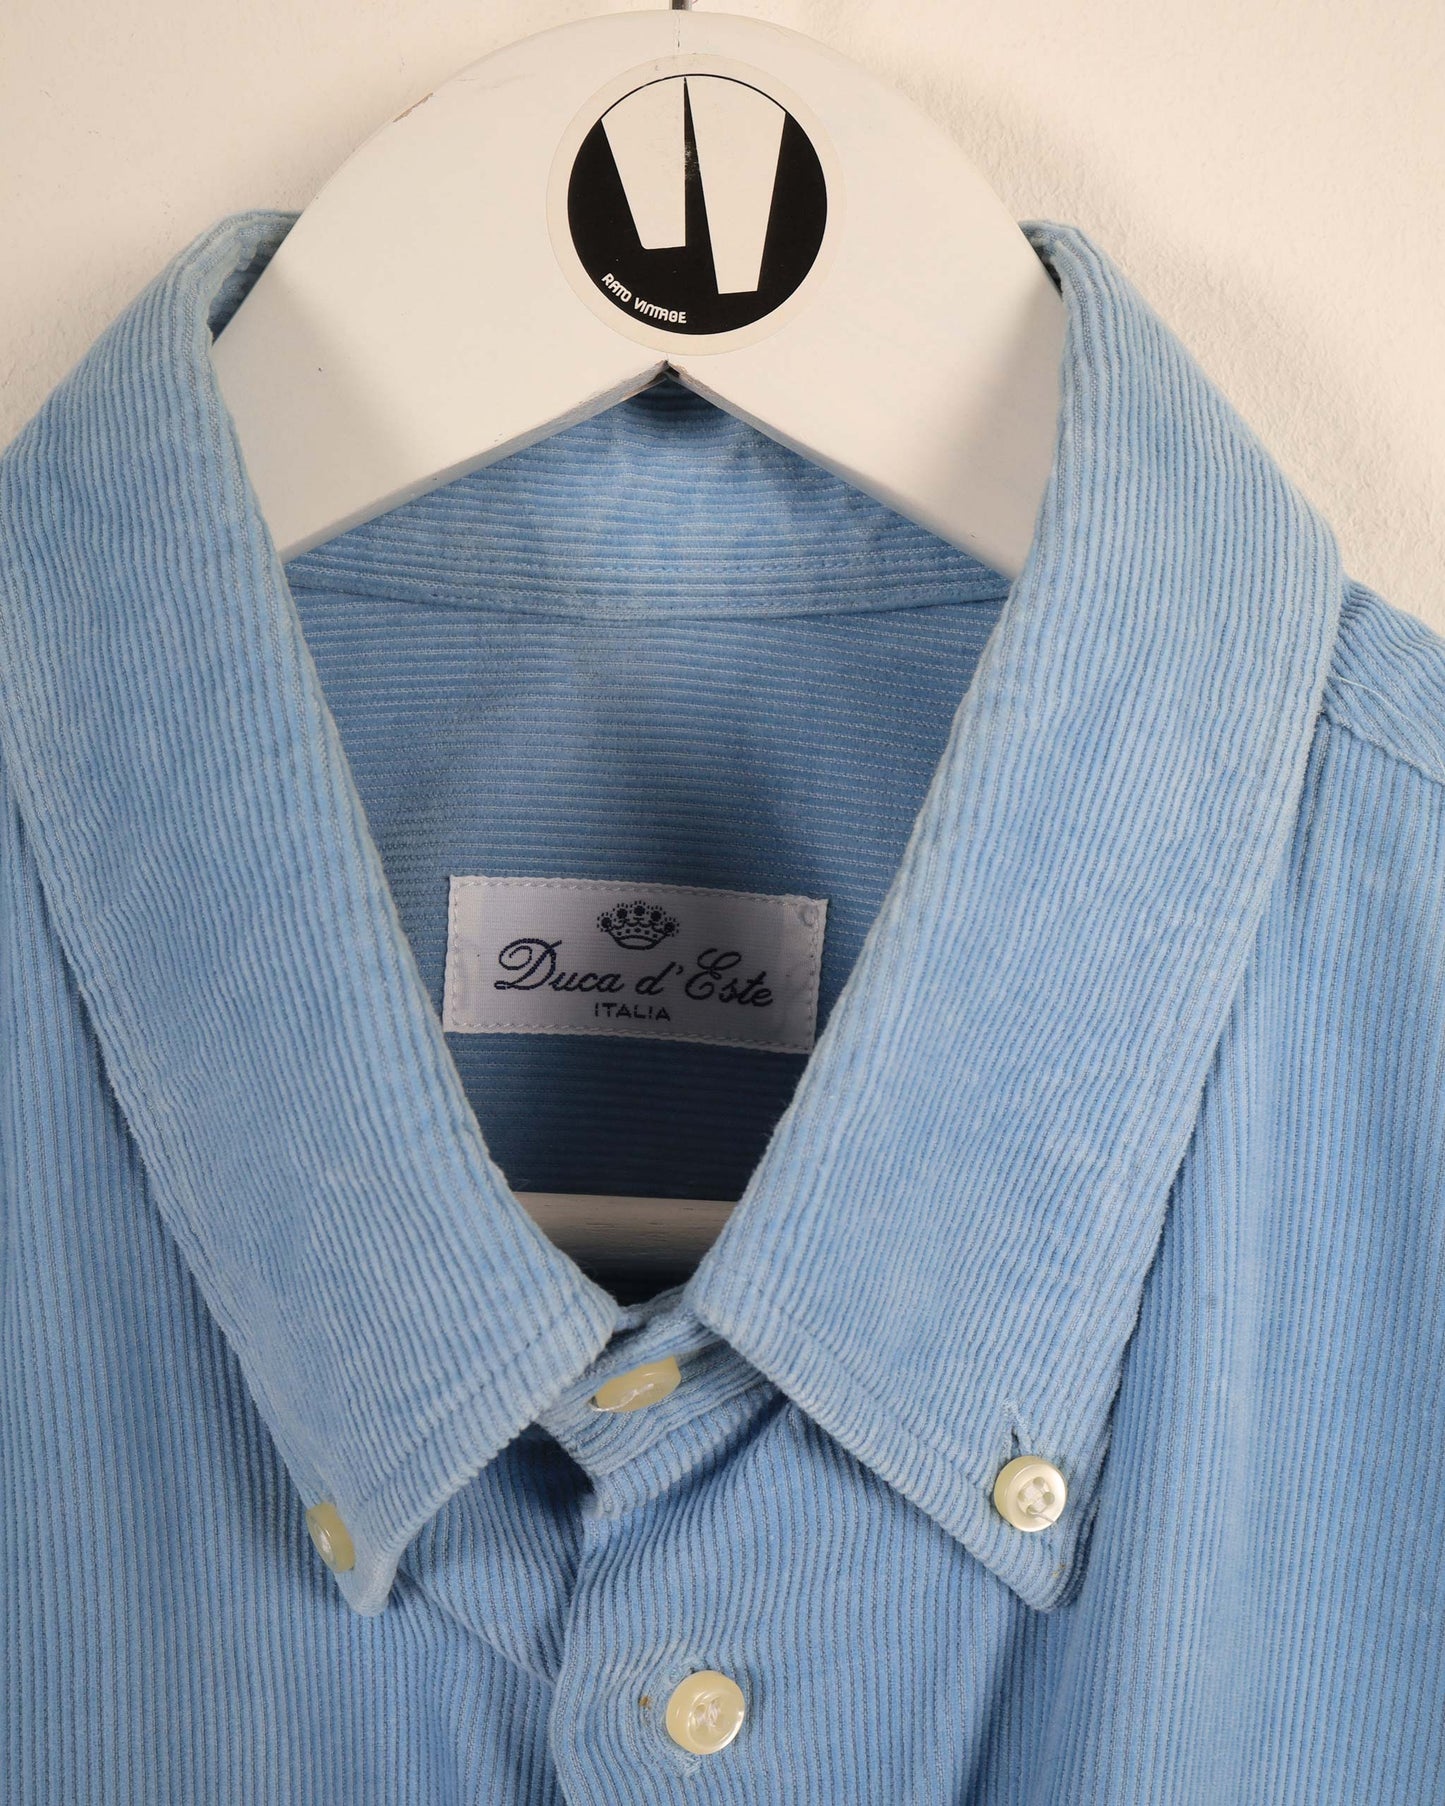 Vintage Duca D’Este Corduroy Shirt